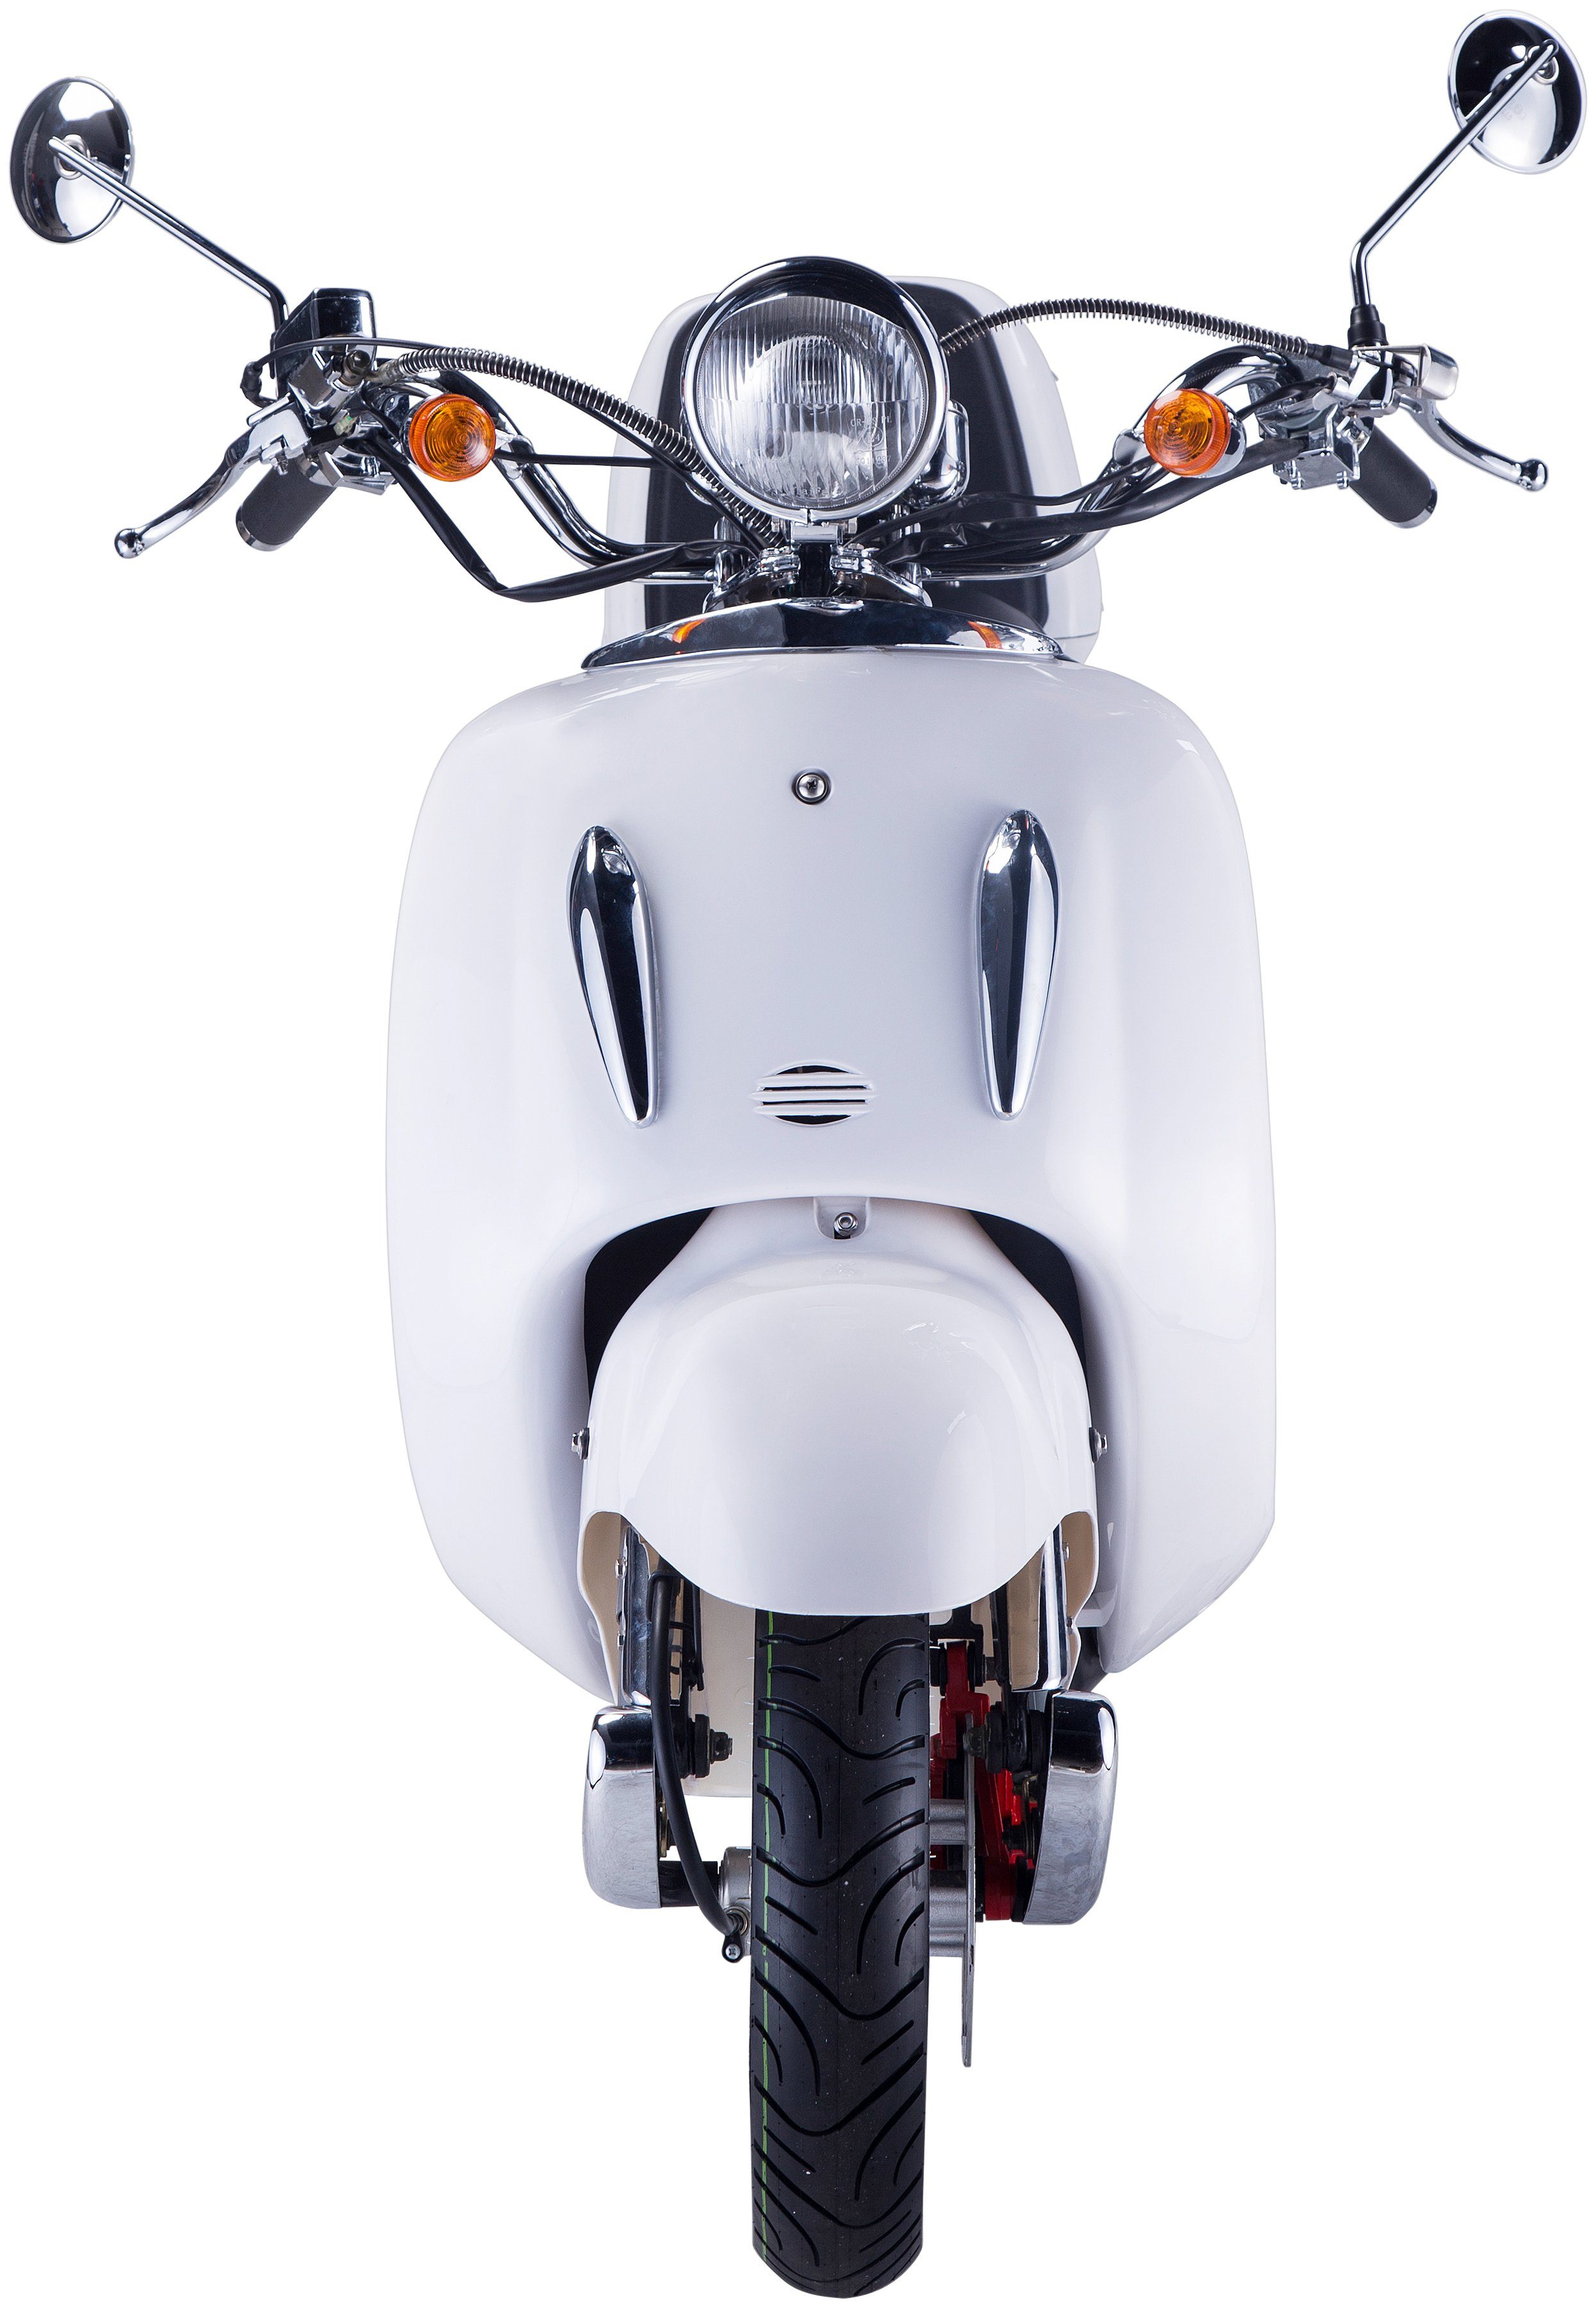 Topcase 50 weiß Motorroller 45 (Set), km/h, GT ccm, UNION mit Strada, 5, Euro